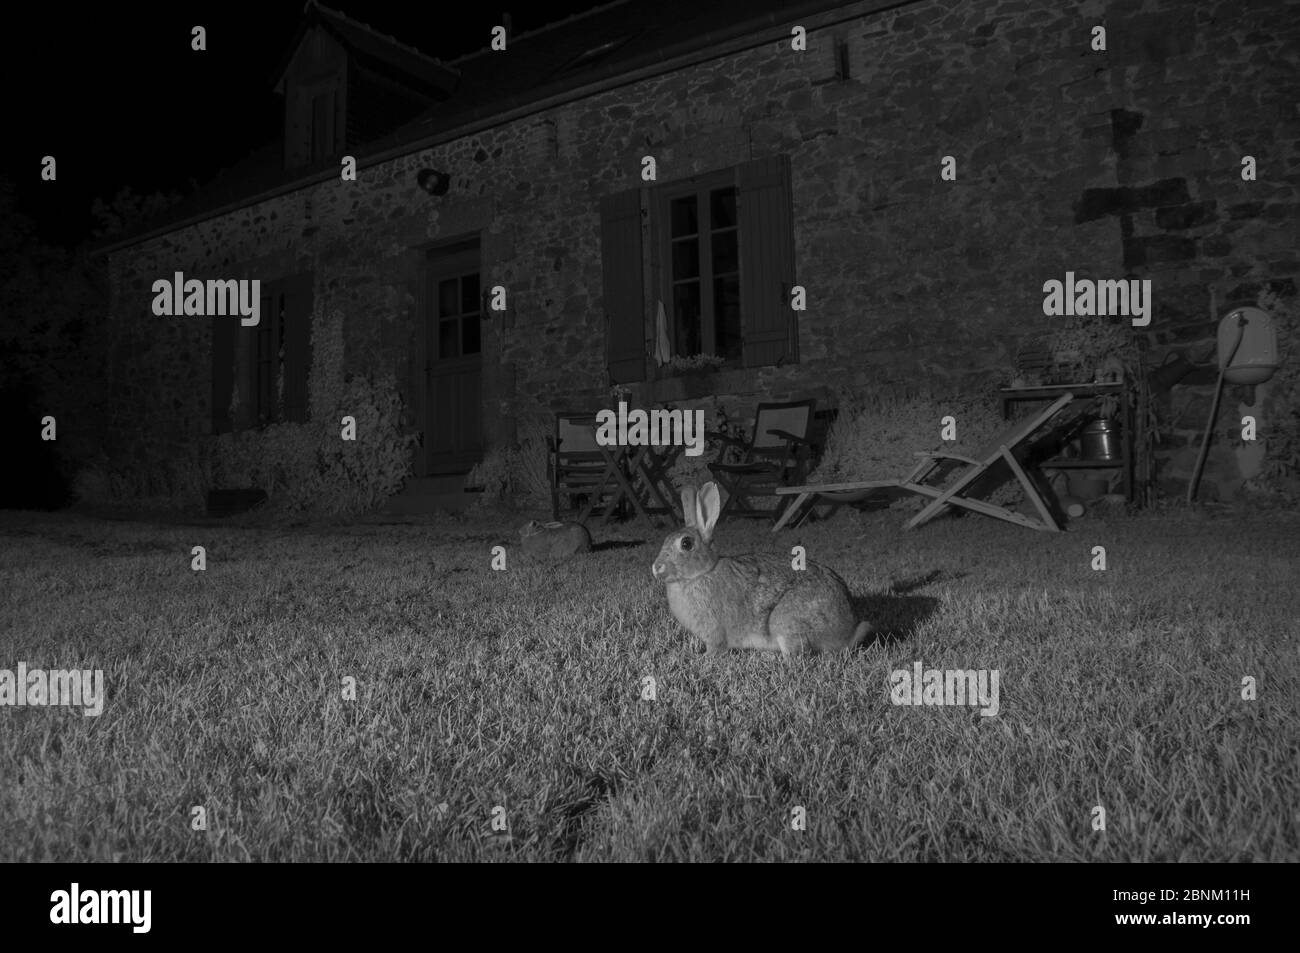 Lapins européens (Oryctolagus cuniculus) à l'extérieur de la maison, pris avec lumière infrarouge la nuit. France, juin. Banque D'Images